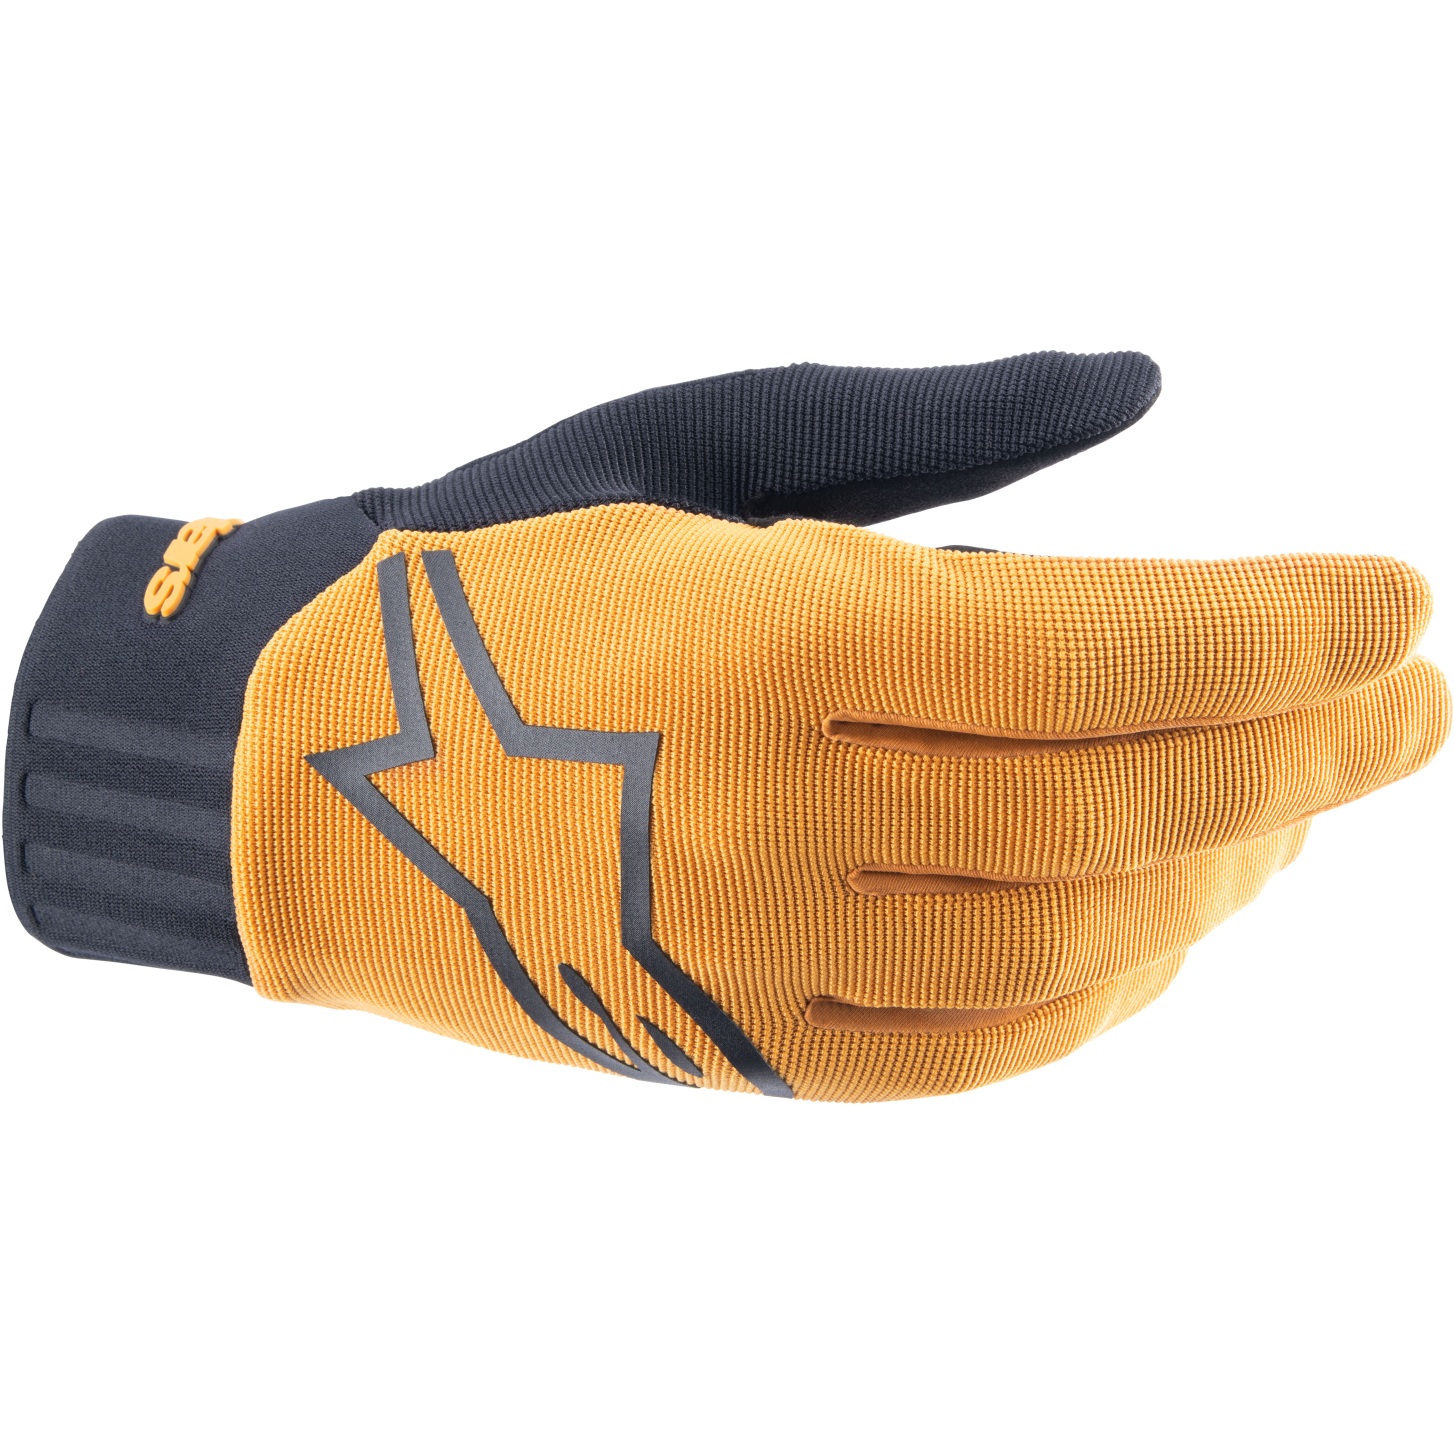 Produktbild von Alpinestars A-Dura Handschuhe - dark gold